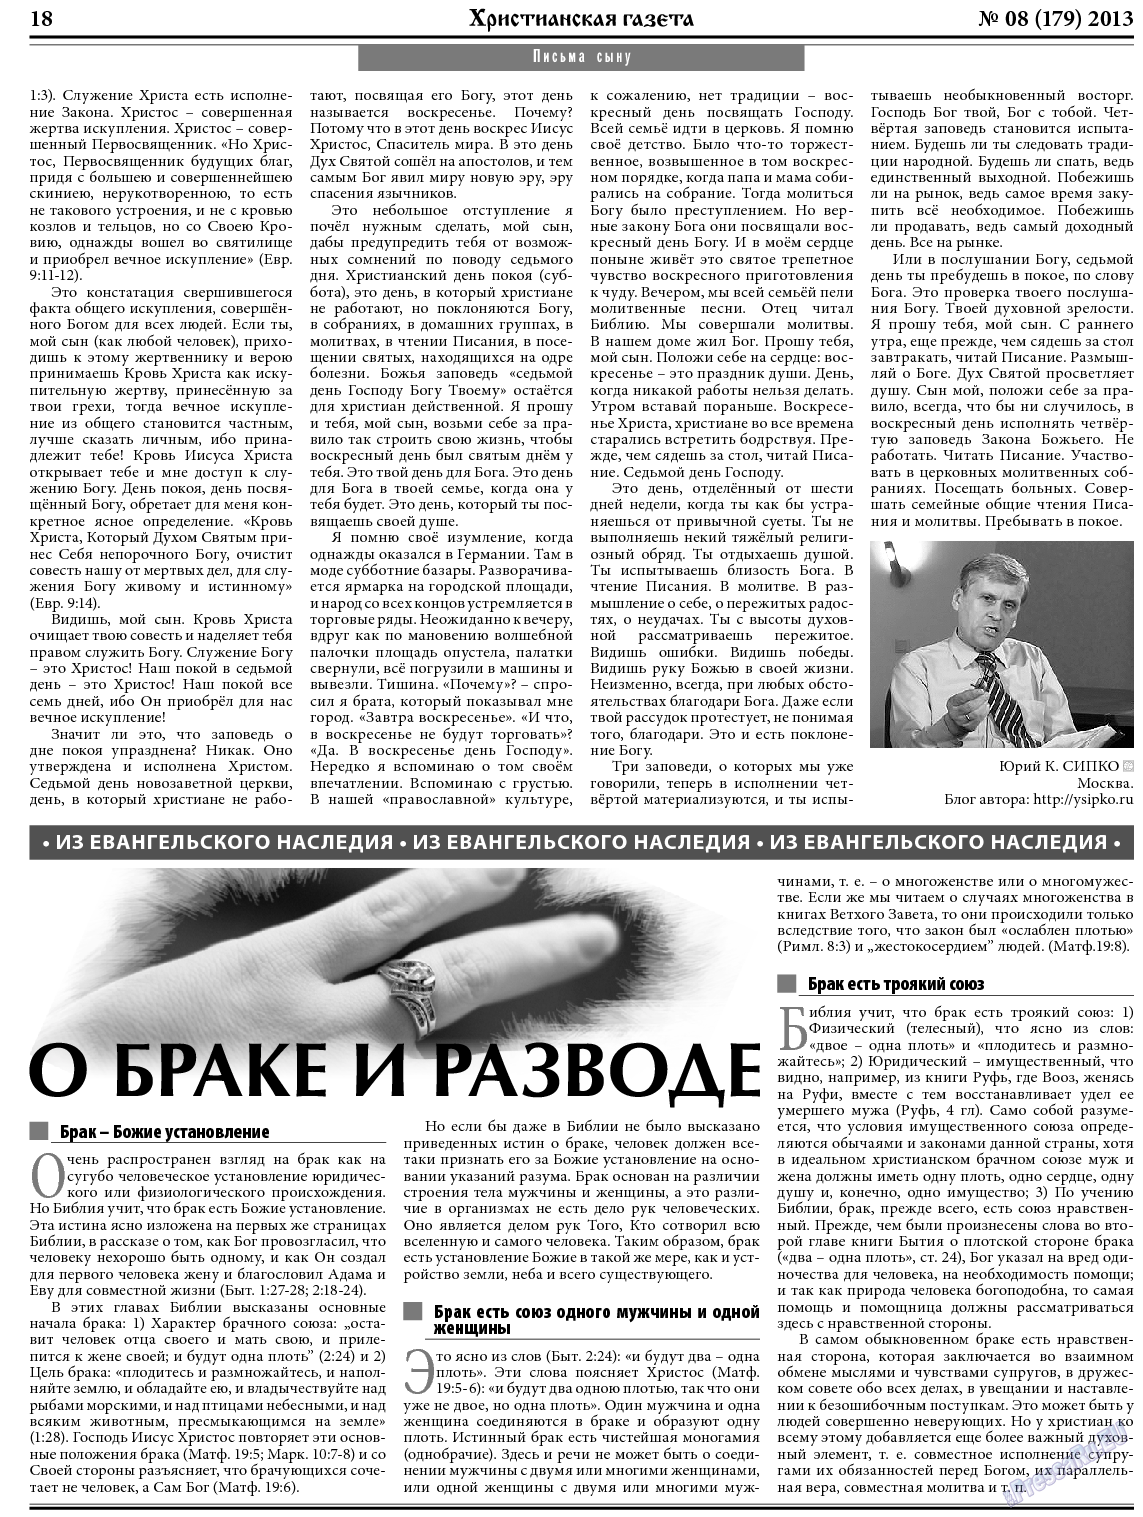 Христианская газета, газета. 2013 №8 стр.26